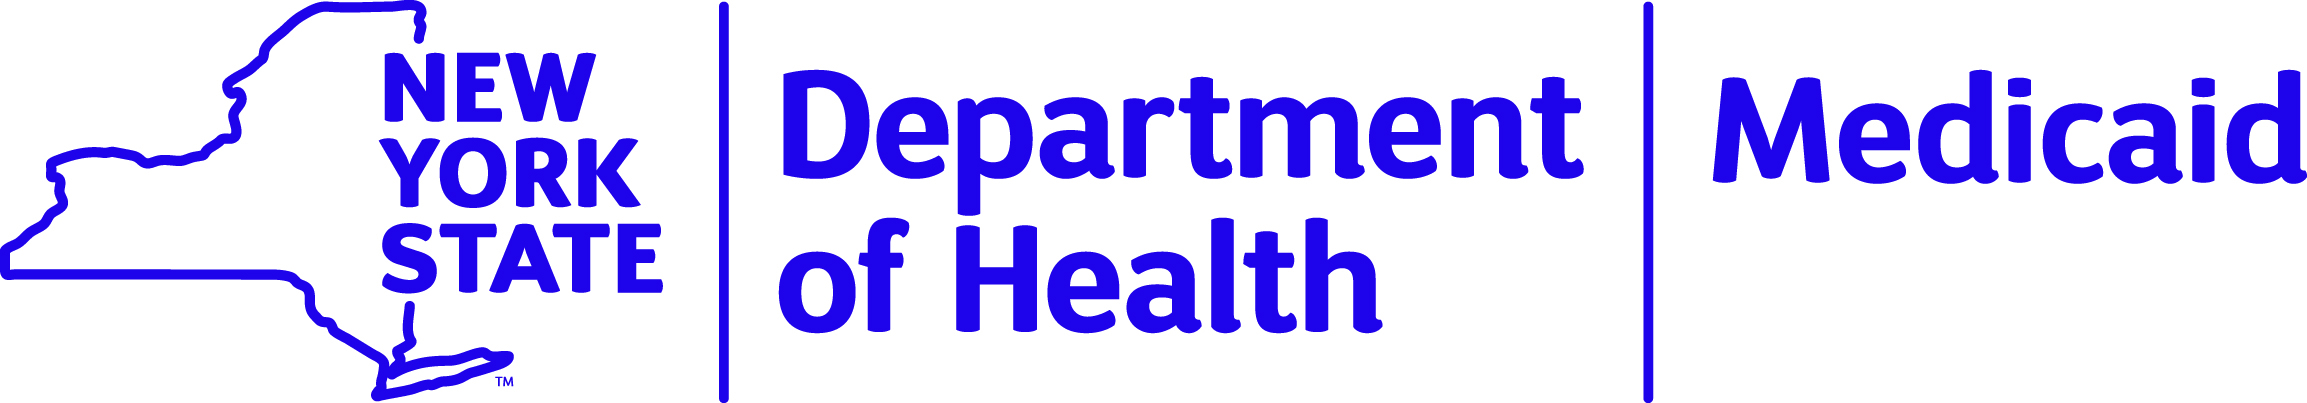 NY Medicaid logo